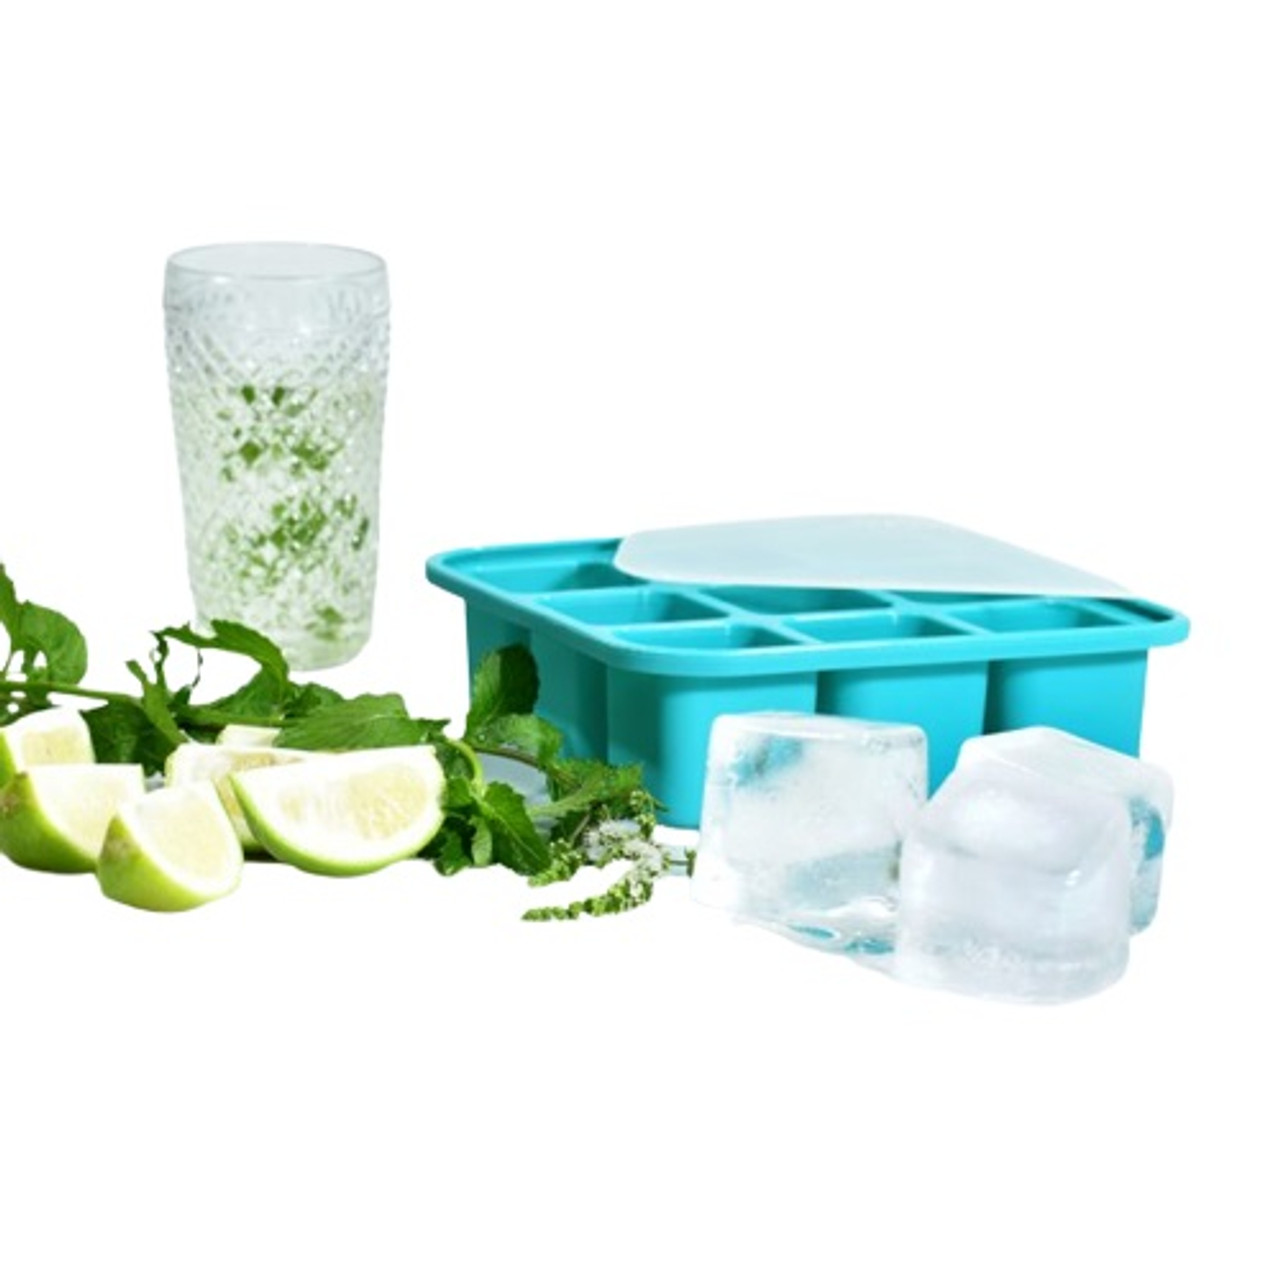 Farberware - Aqua Silicone Ice Cube Tray, 2-Pack